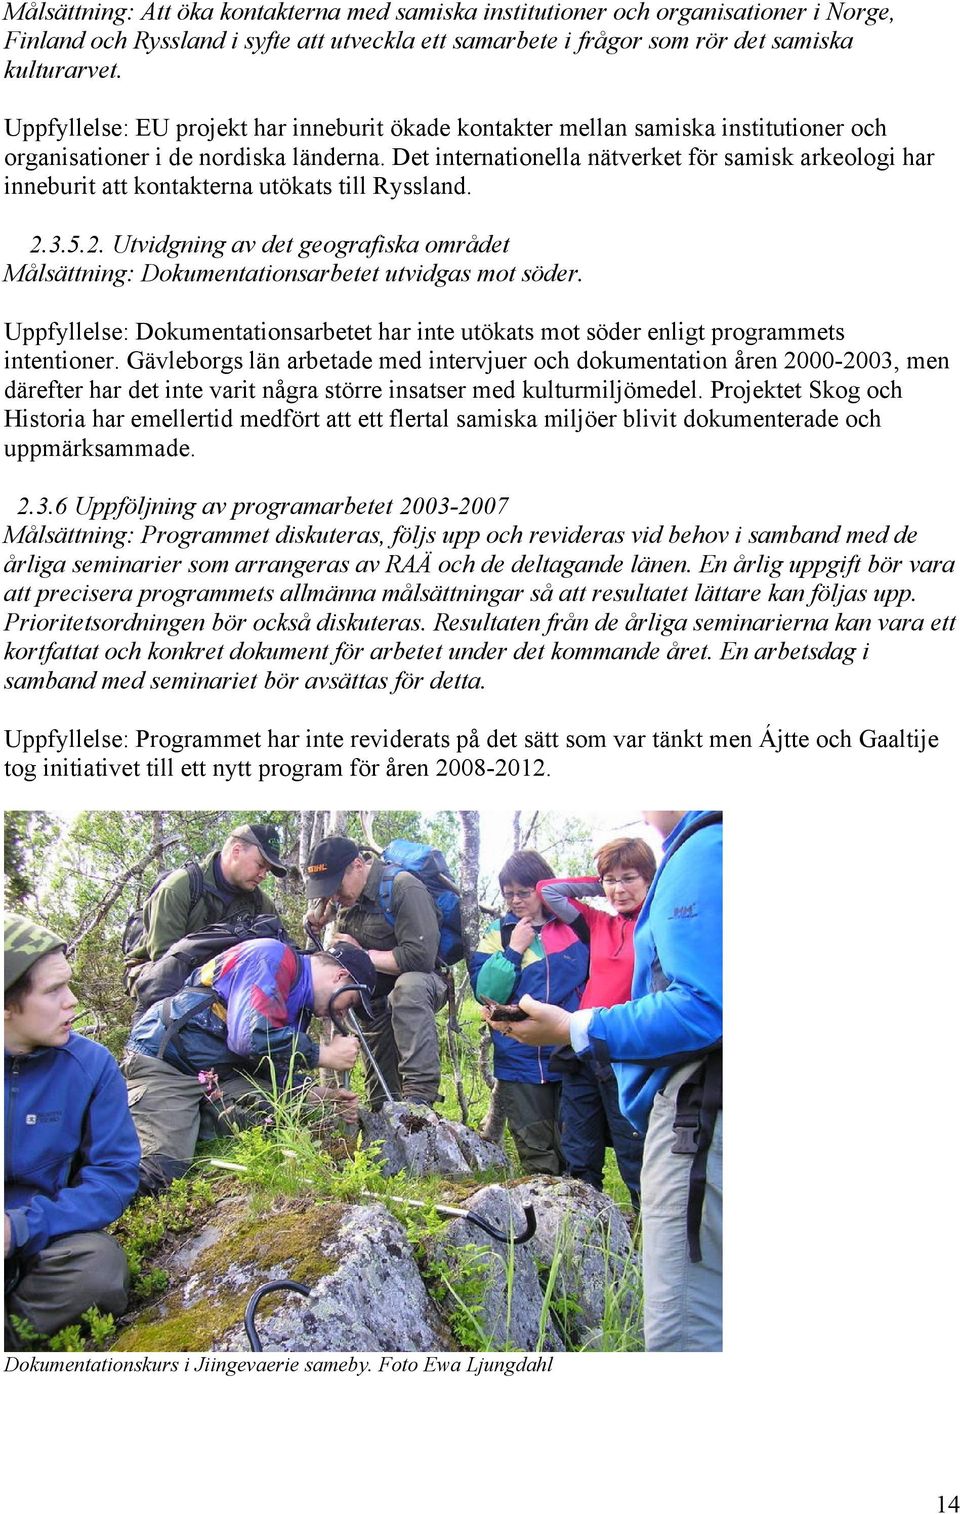 Det internationella nätverket för samisk arkeologi har inneburit att kontakterna utökats till Ryssland. 2.3.5.2. Utvidgning av det geografiska området Målsättning: Dokumentationsarbetet utvidgas mot söder.